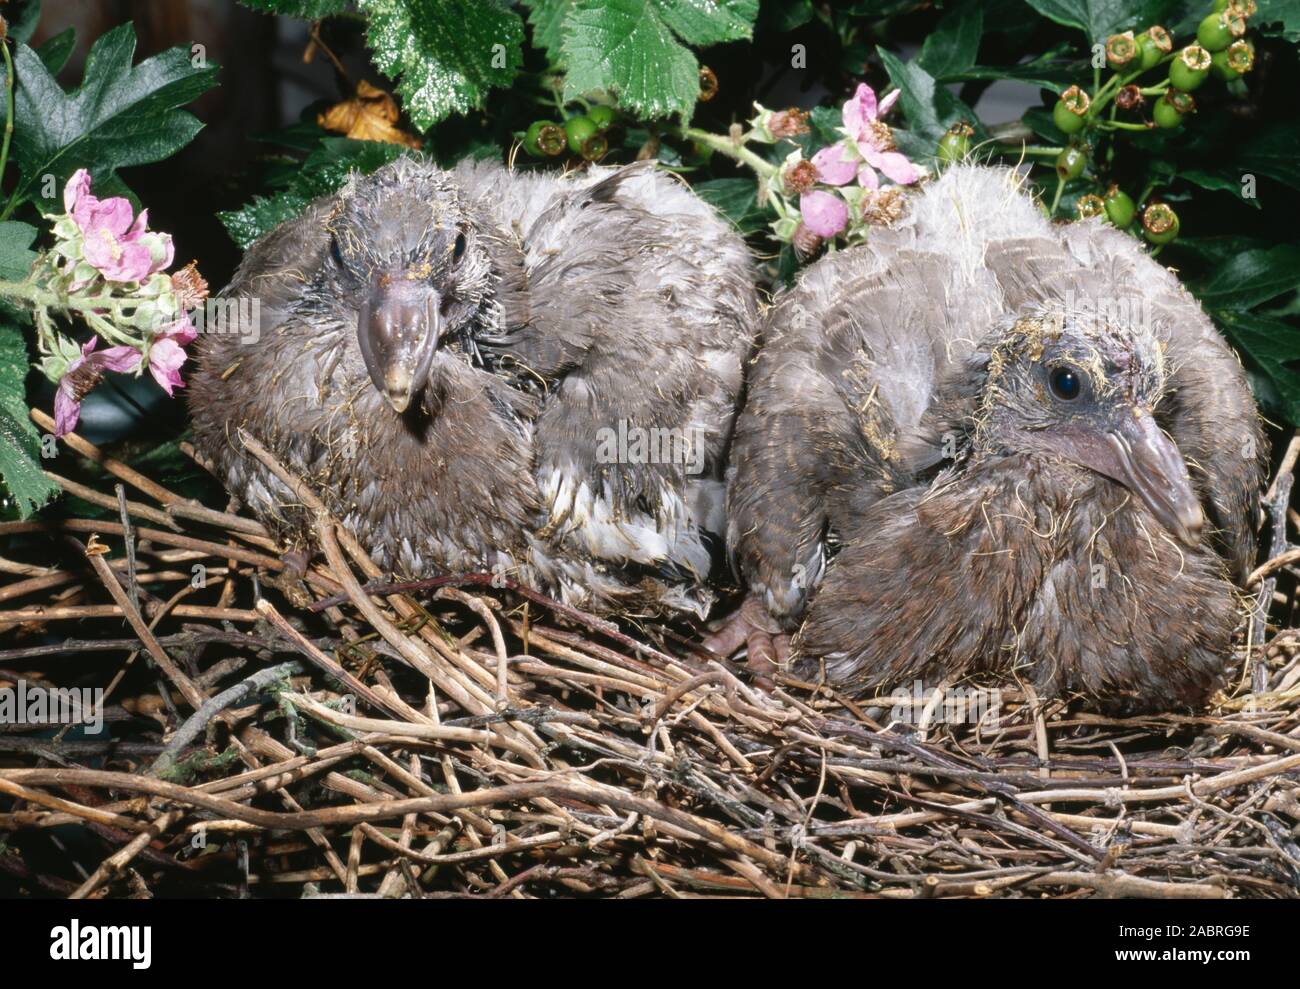 PIGEON RAMIER young le nid (Columba palumbus). Couvée de deux œufs, maintenant bien développé deux pigeonneaux ou juvéniles. UK. Banque D'Images